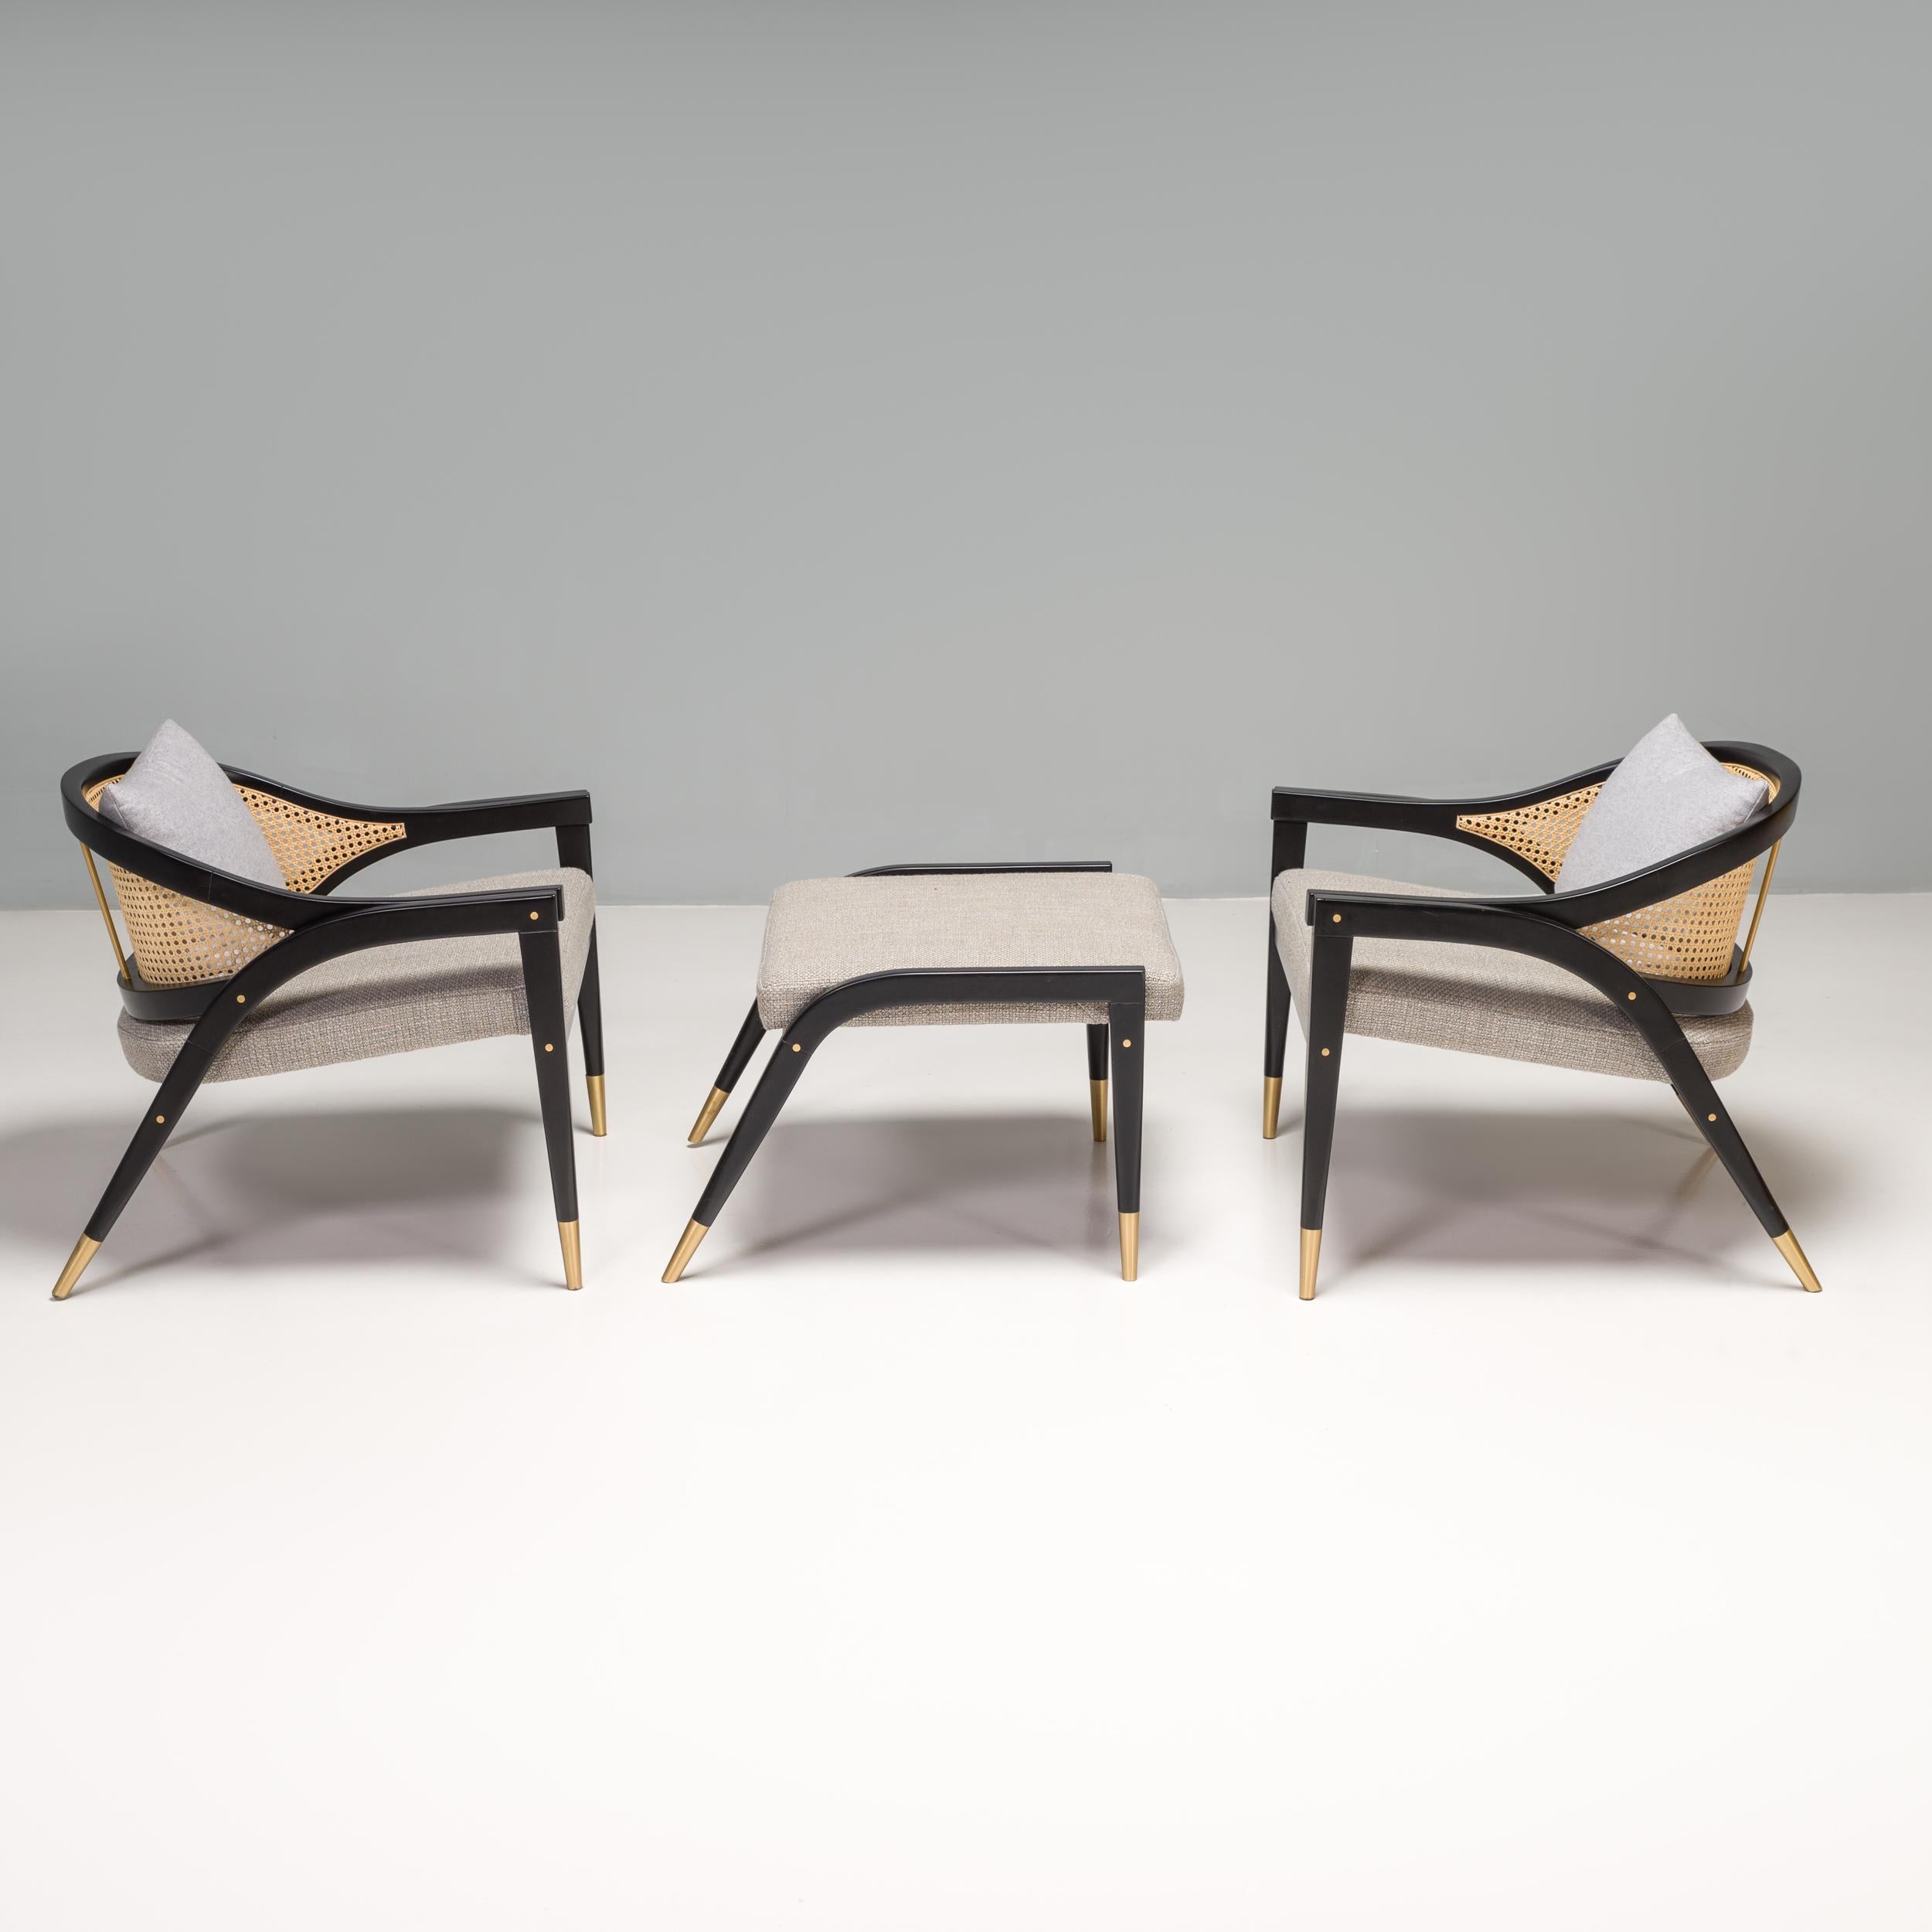 Der von DUISTT entworfene und in Portugal handgefertigte Stuhl und Hocker Wormley ist vom Edward Wormley Captain's Chair aus der amerikanischen Moderne der 1950er Jahre inspiriert.

Der Stuhl besteht aus einem Gestell aus schwarz satiniertem